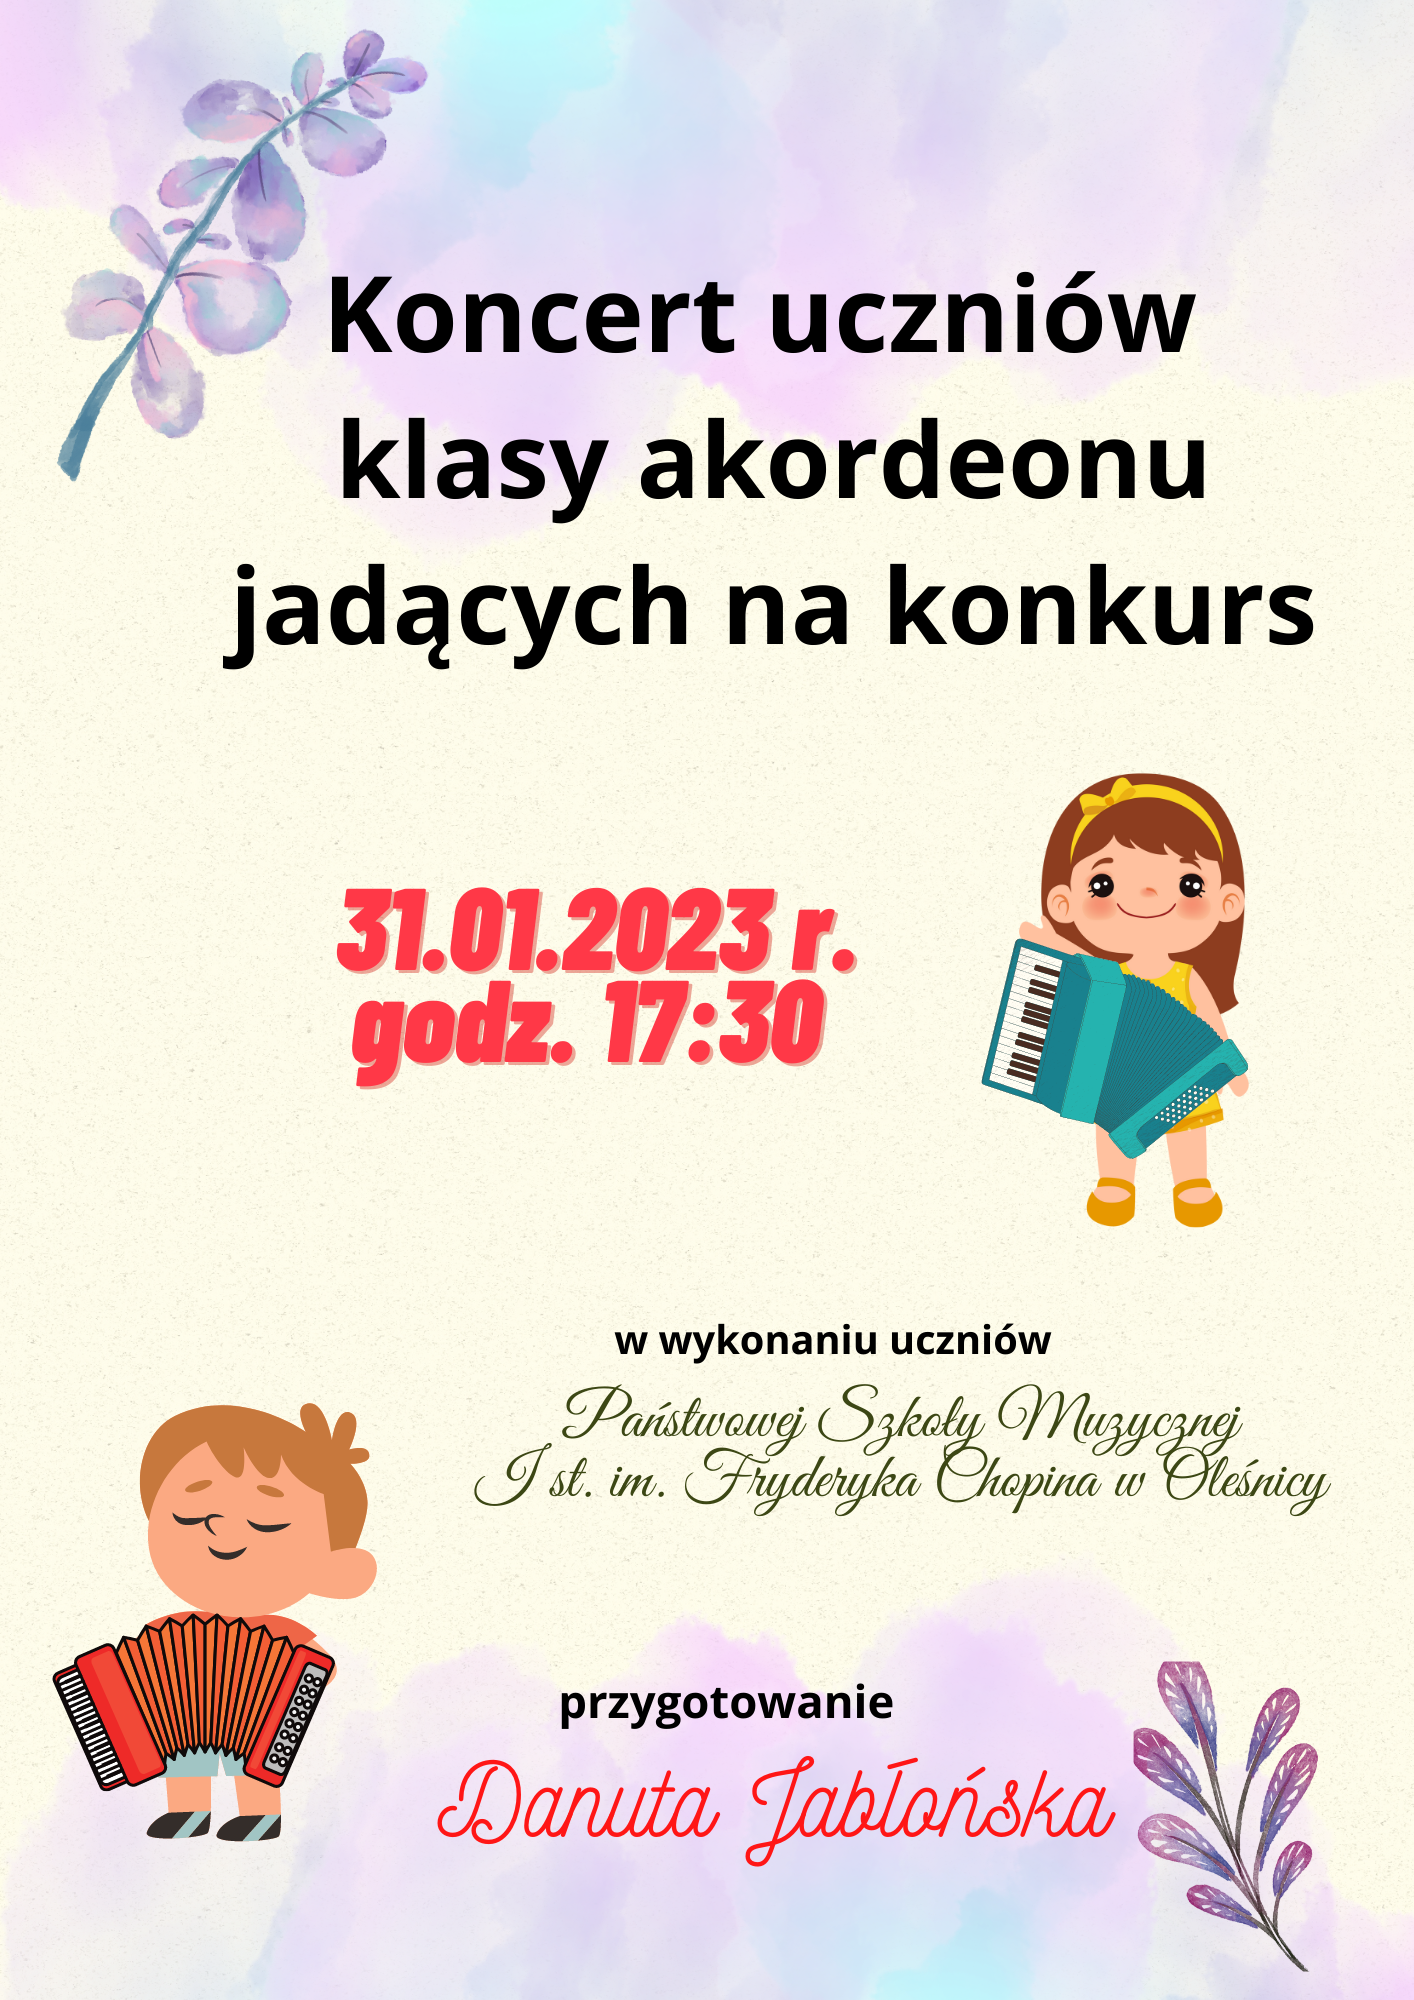 Plakat informujący o koncercie uczniów klasy akordeonu p. Danuty Jabłońskiej w dniu 31.01.2023 r. o godz. 17:30. Na plakacie znajdują się grafiki dwójki dzieci grających na akordeonie, tło jest w pastelowych barwach.